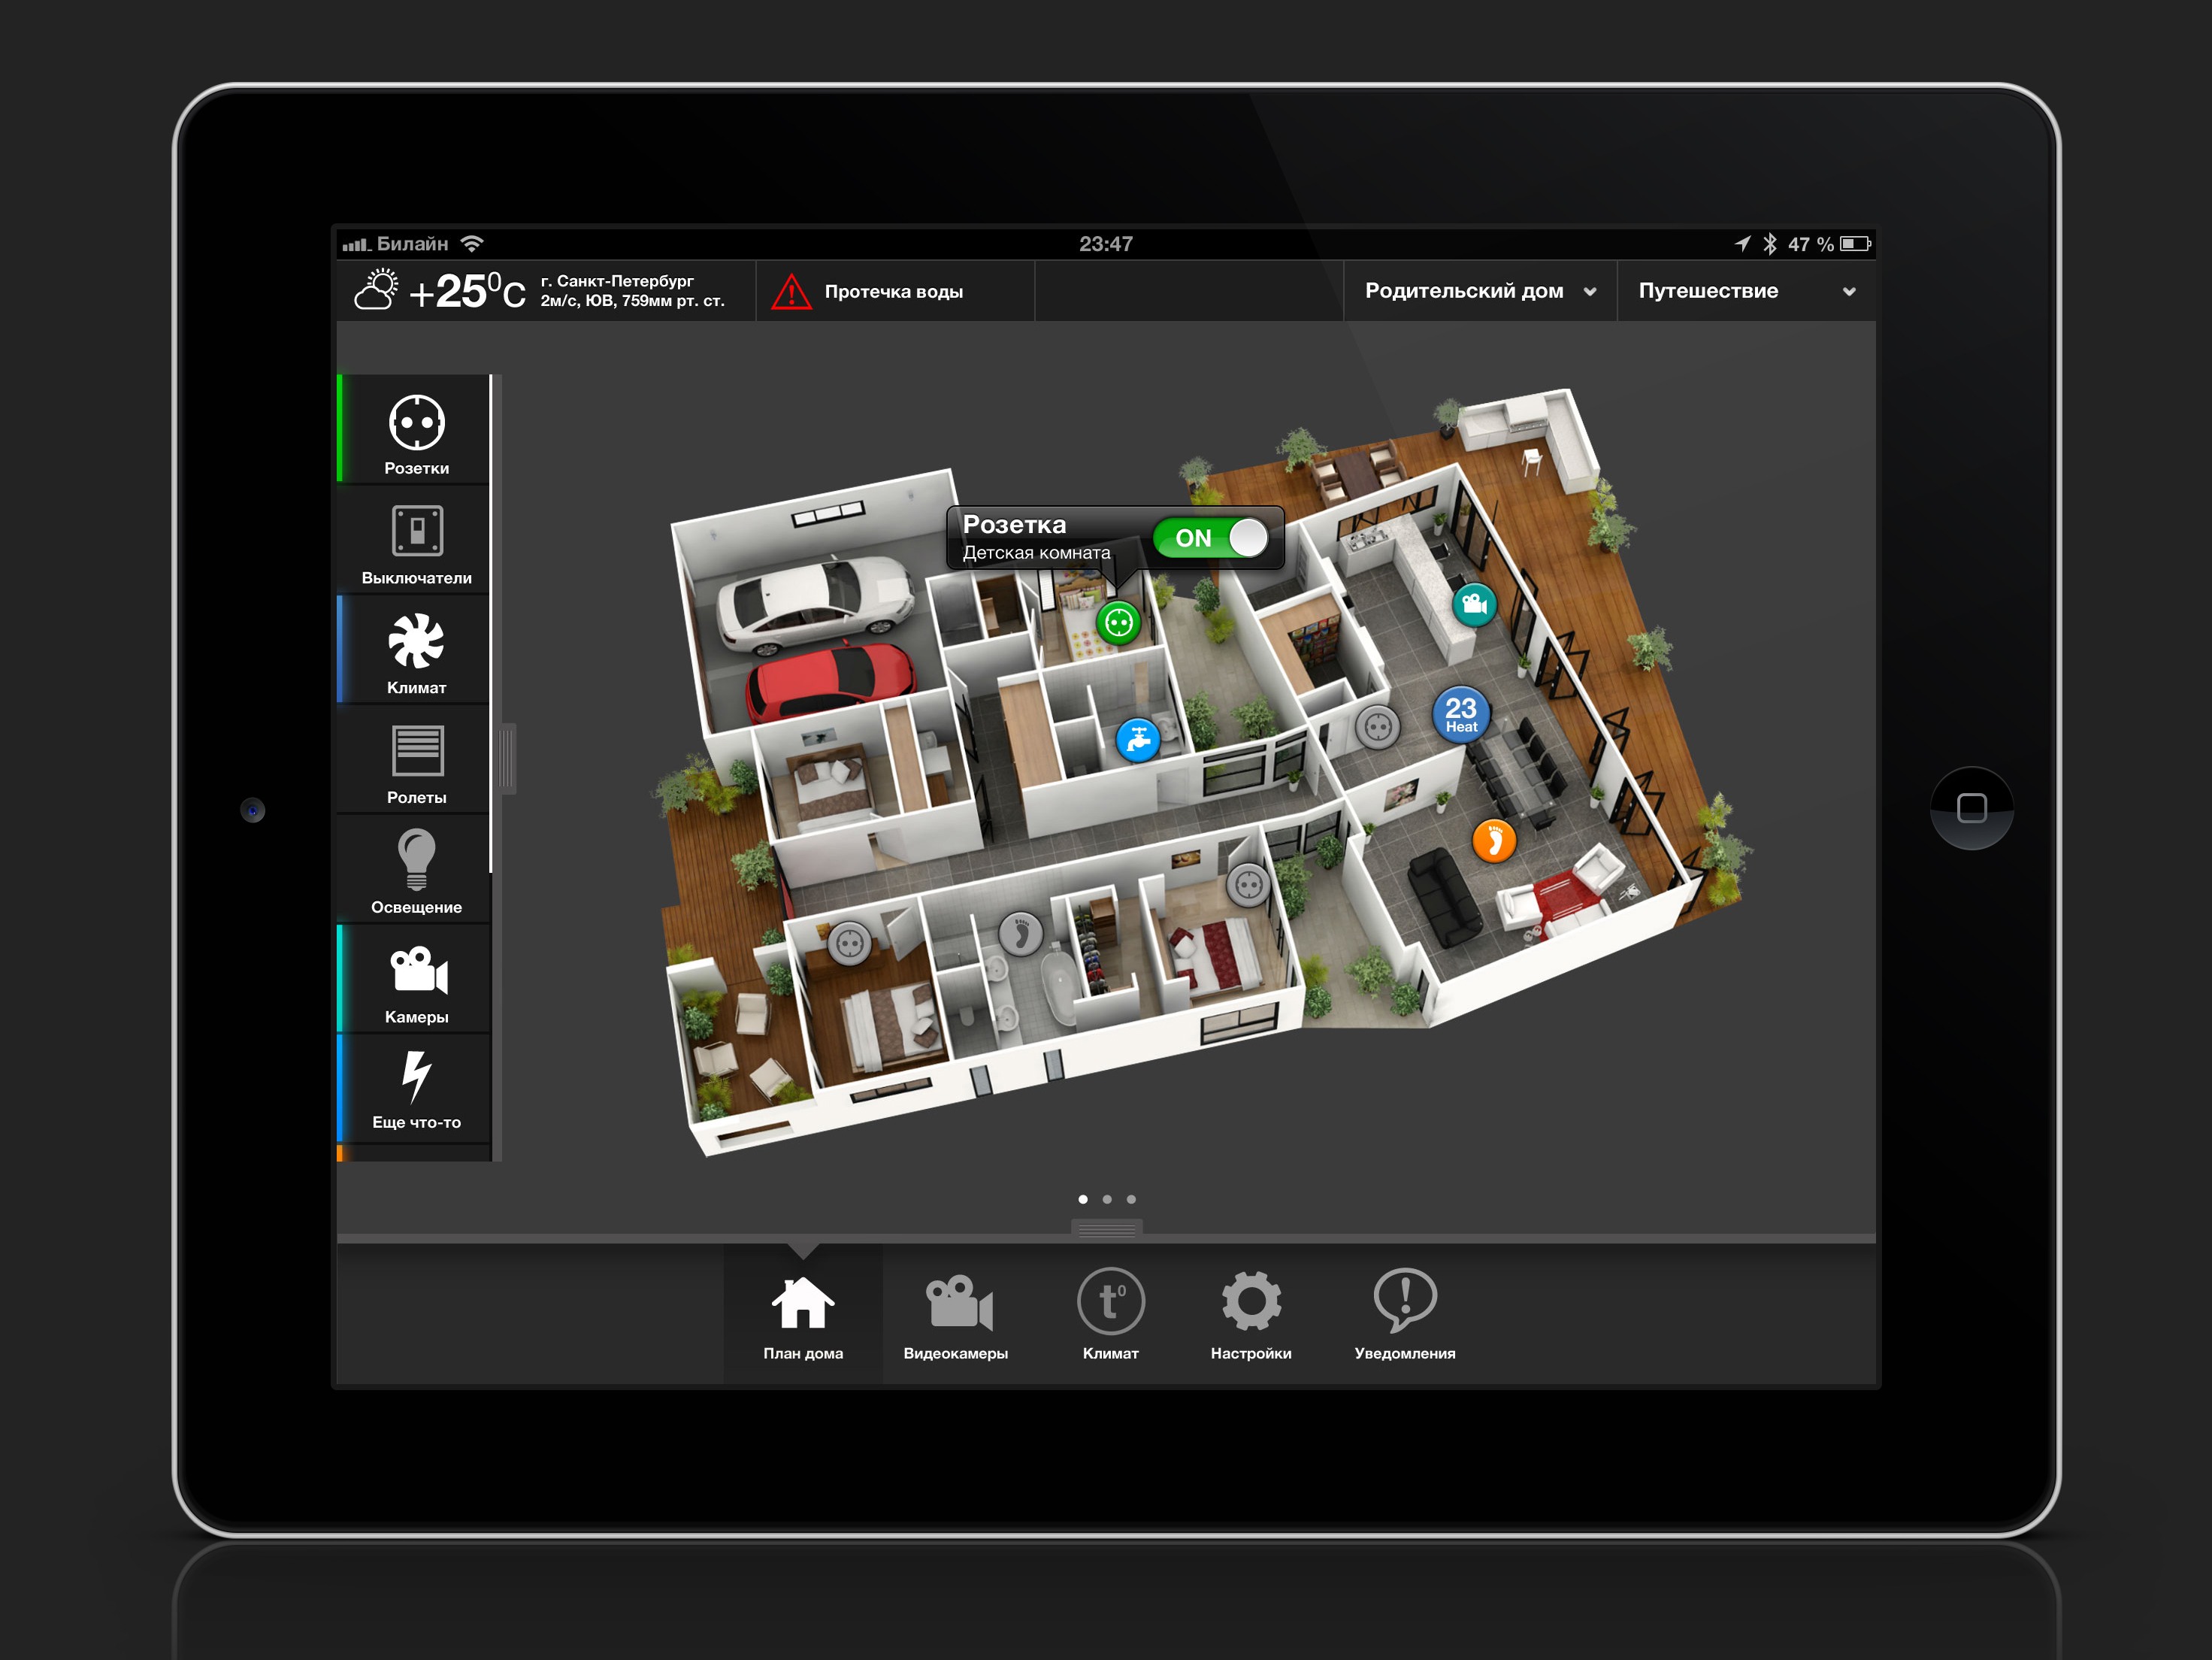 Дизайн дома на андроид. Интерфейс панели управления умного дома. Умный дом. Планшет умный дом. Планшет для управления умным домом.